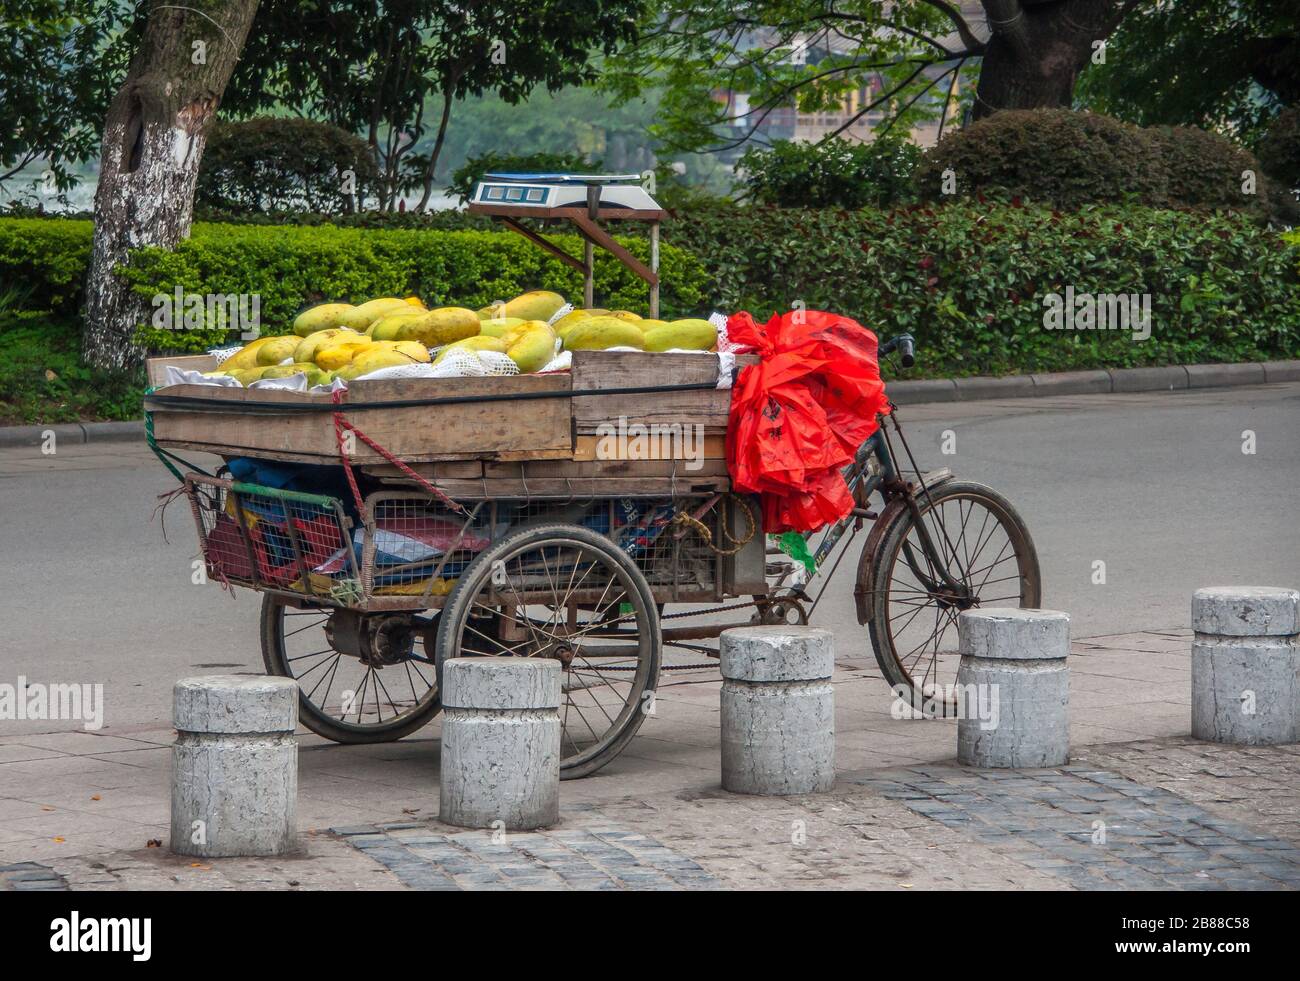 Guilin, Chine - 10 mai 2010: Centre-ville. Vélo à pédale de tricycle ancien avec compartiment de chargement en bois plein de papayas mûrs vert-jaune dans la rue de surface grise. Banque D'Images